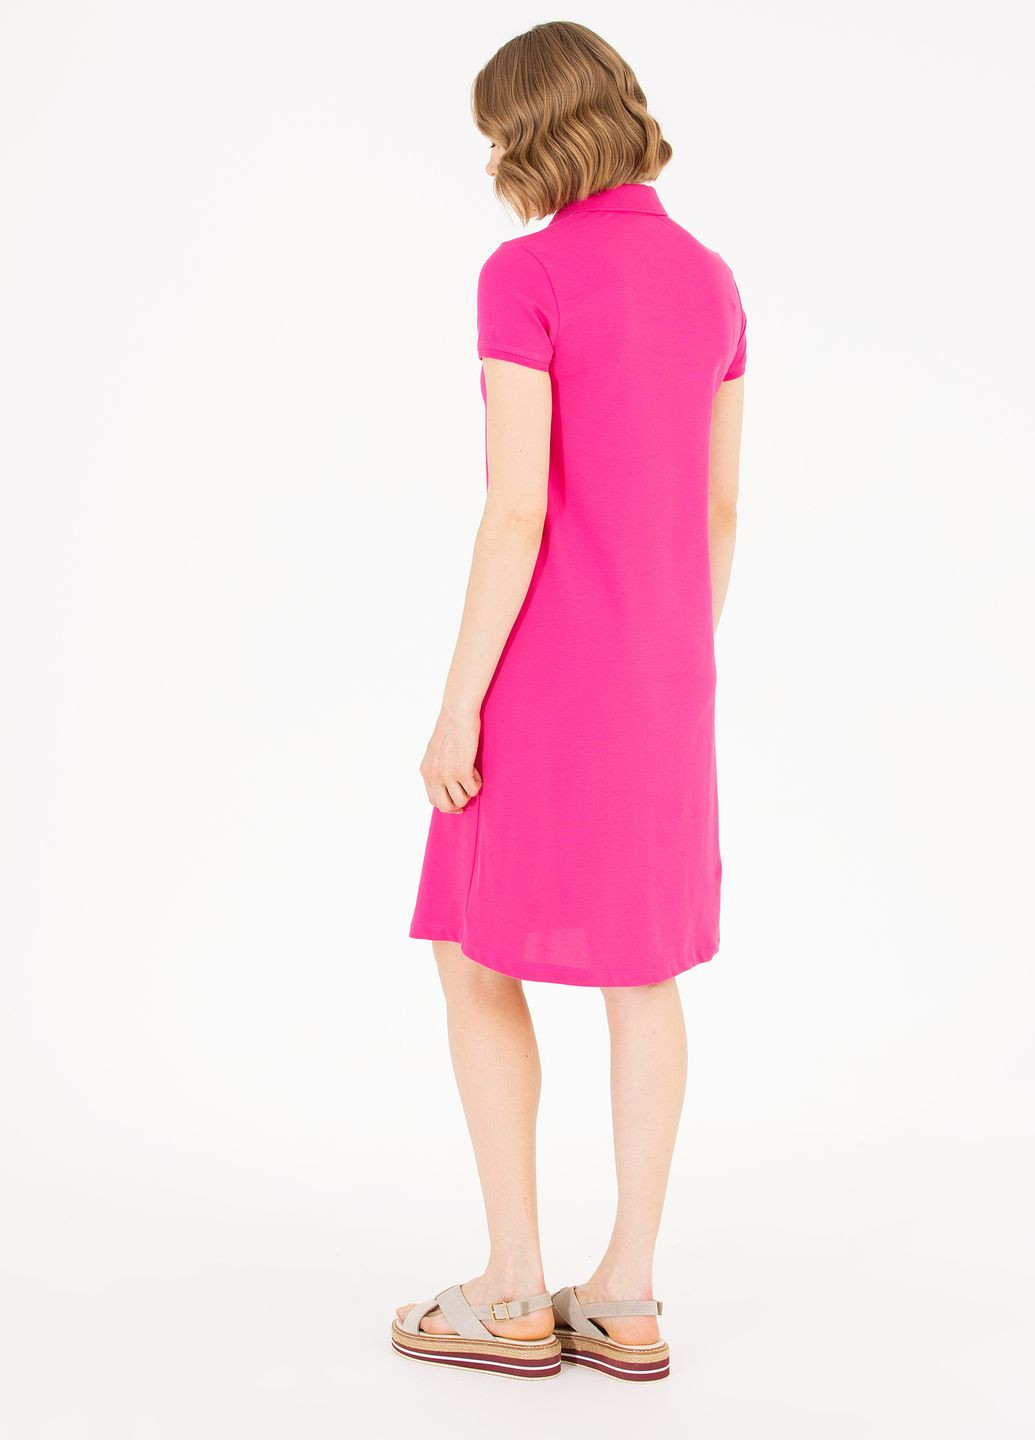 Кислотно-розовое платье женское U.S. Polo Assn.